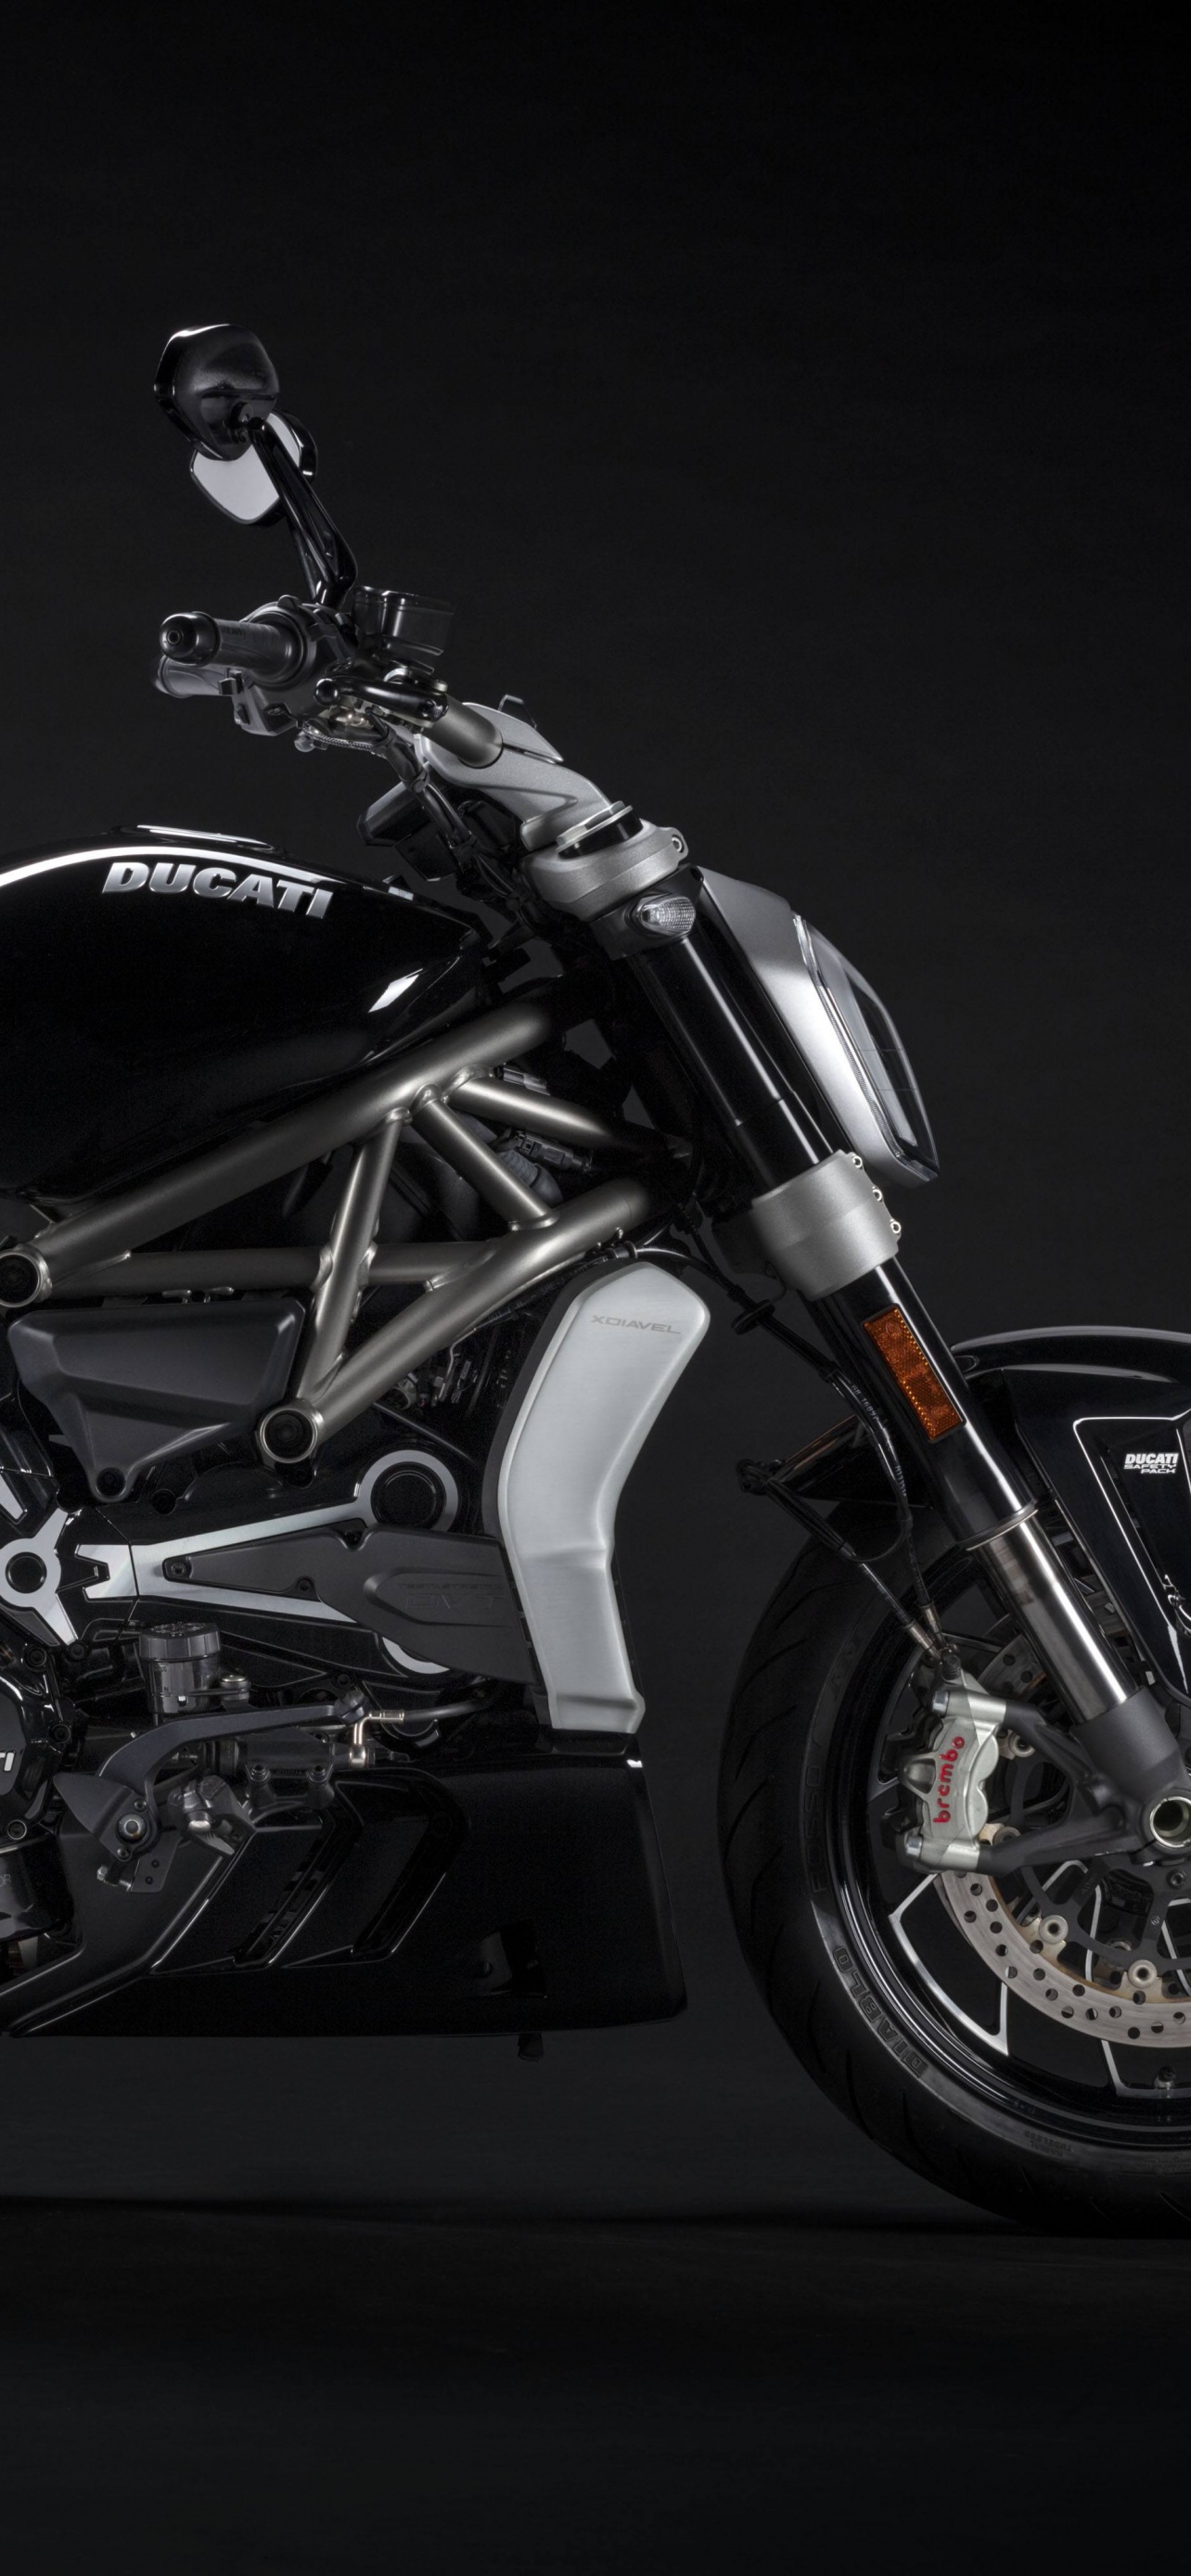 Ducati XDiavel S Wallpaper 4K, Black bikes, Black/Dark, #3368